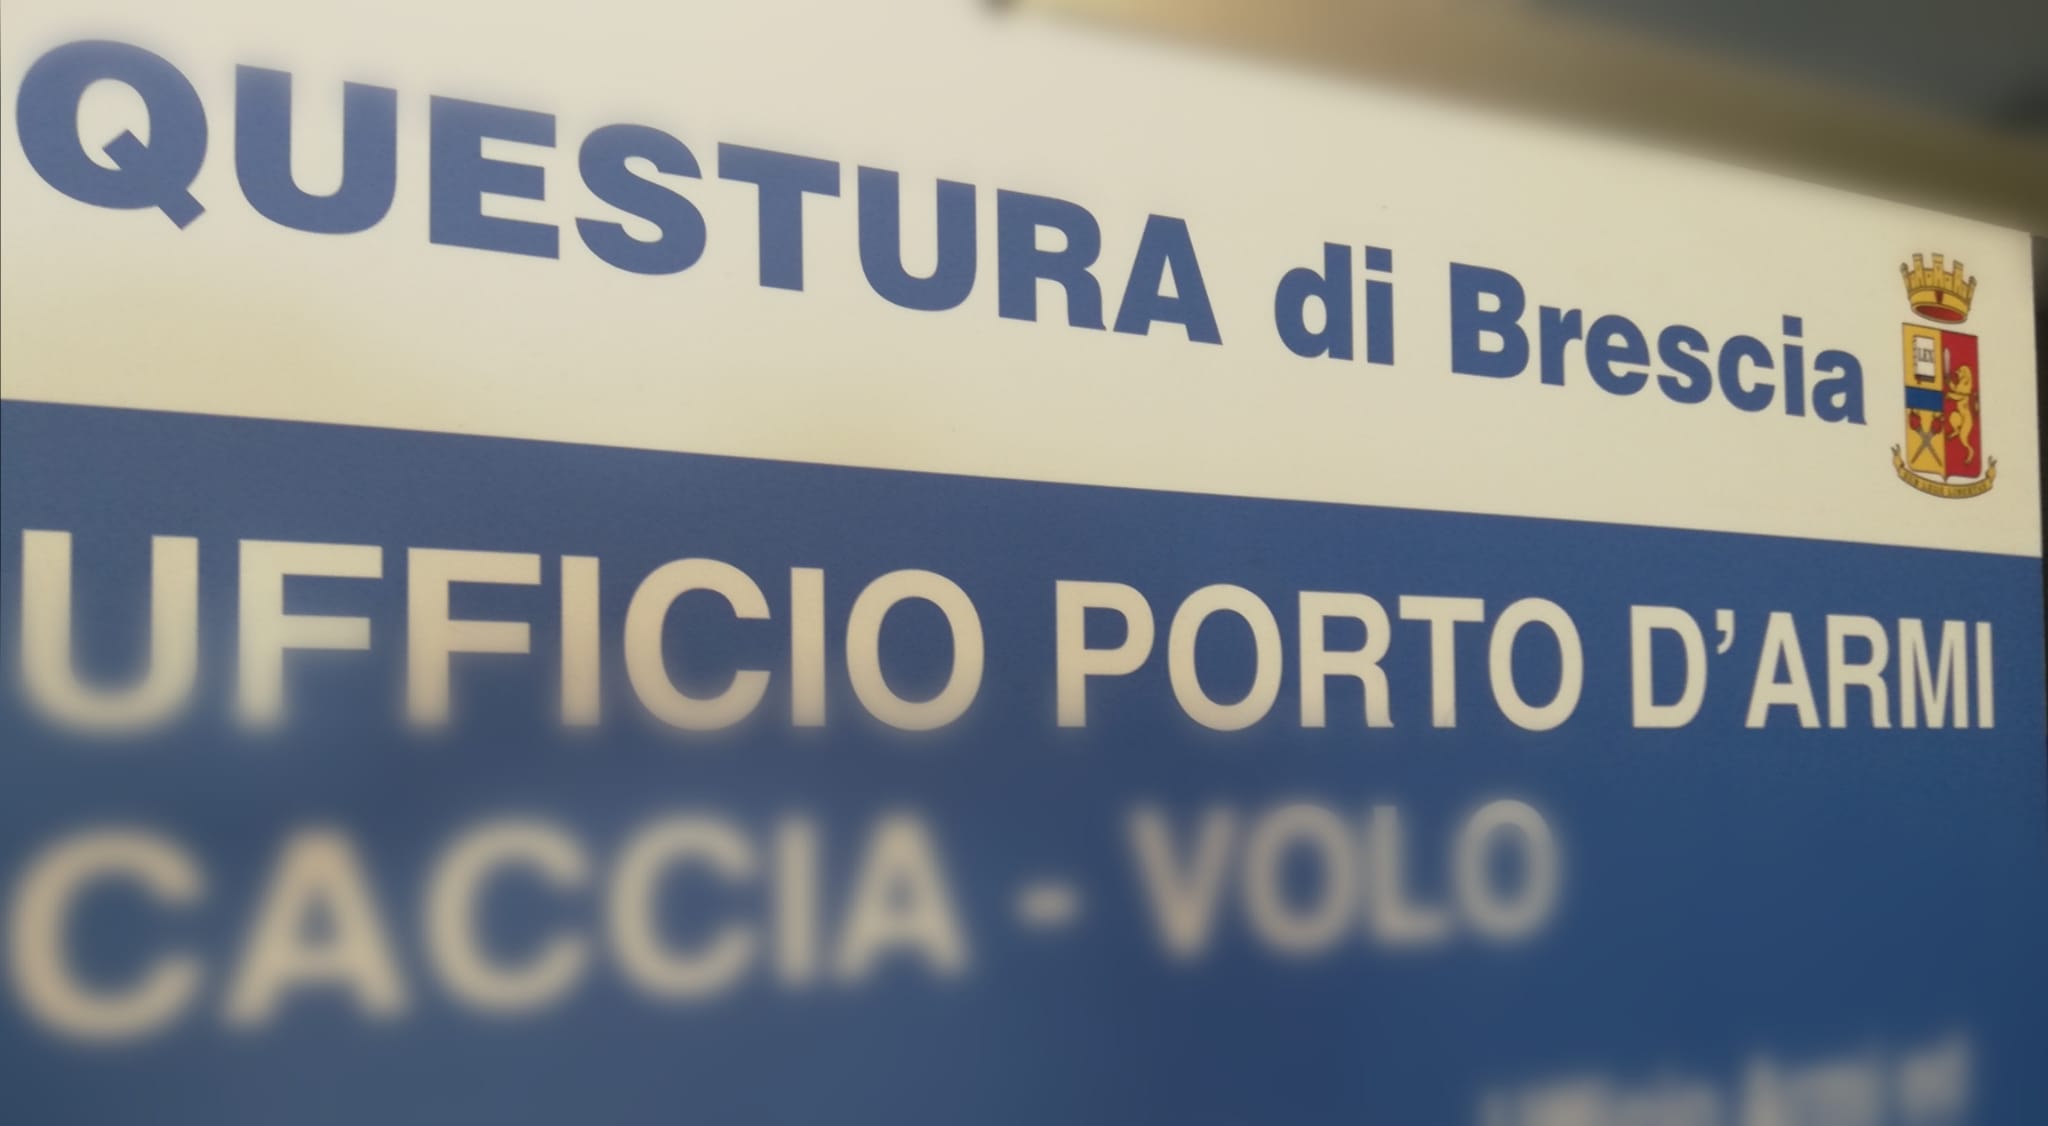 La Questura di Brescia ricorda, ai detentori di armi, l’obbligo di presentare la certificazione medica di idoneità psicofisica